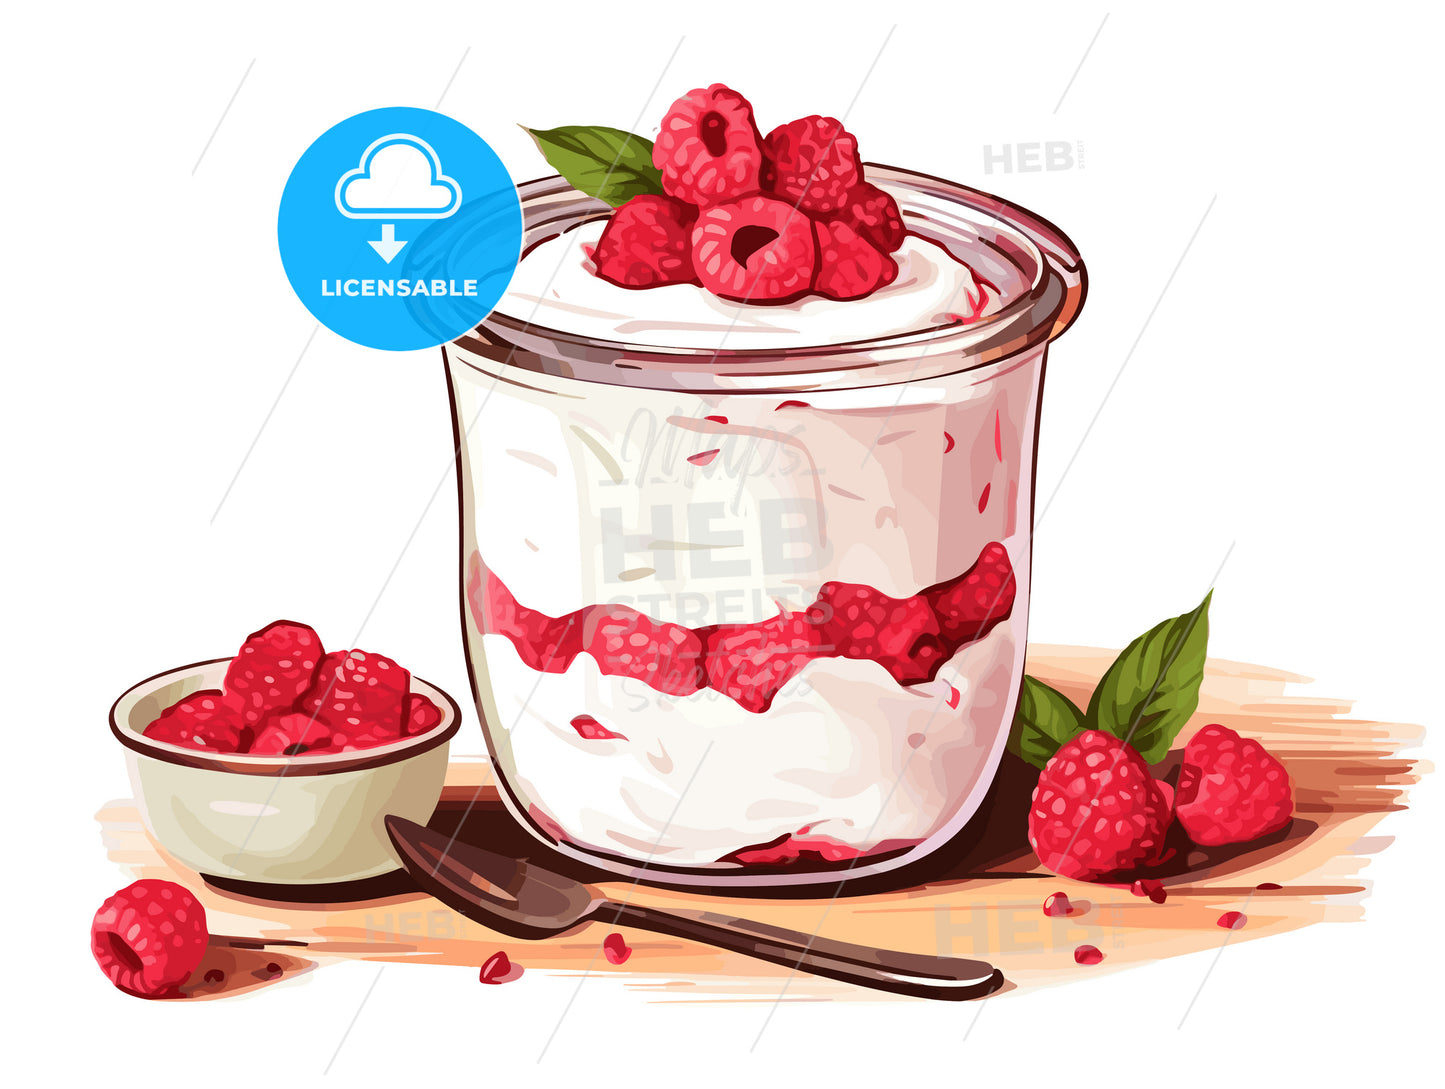 Healthy Breakfast of mueseli yogurt raspberries